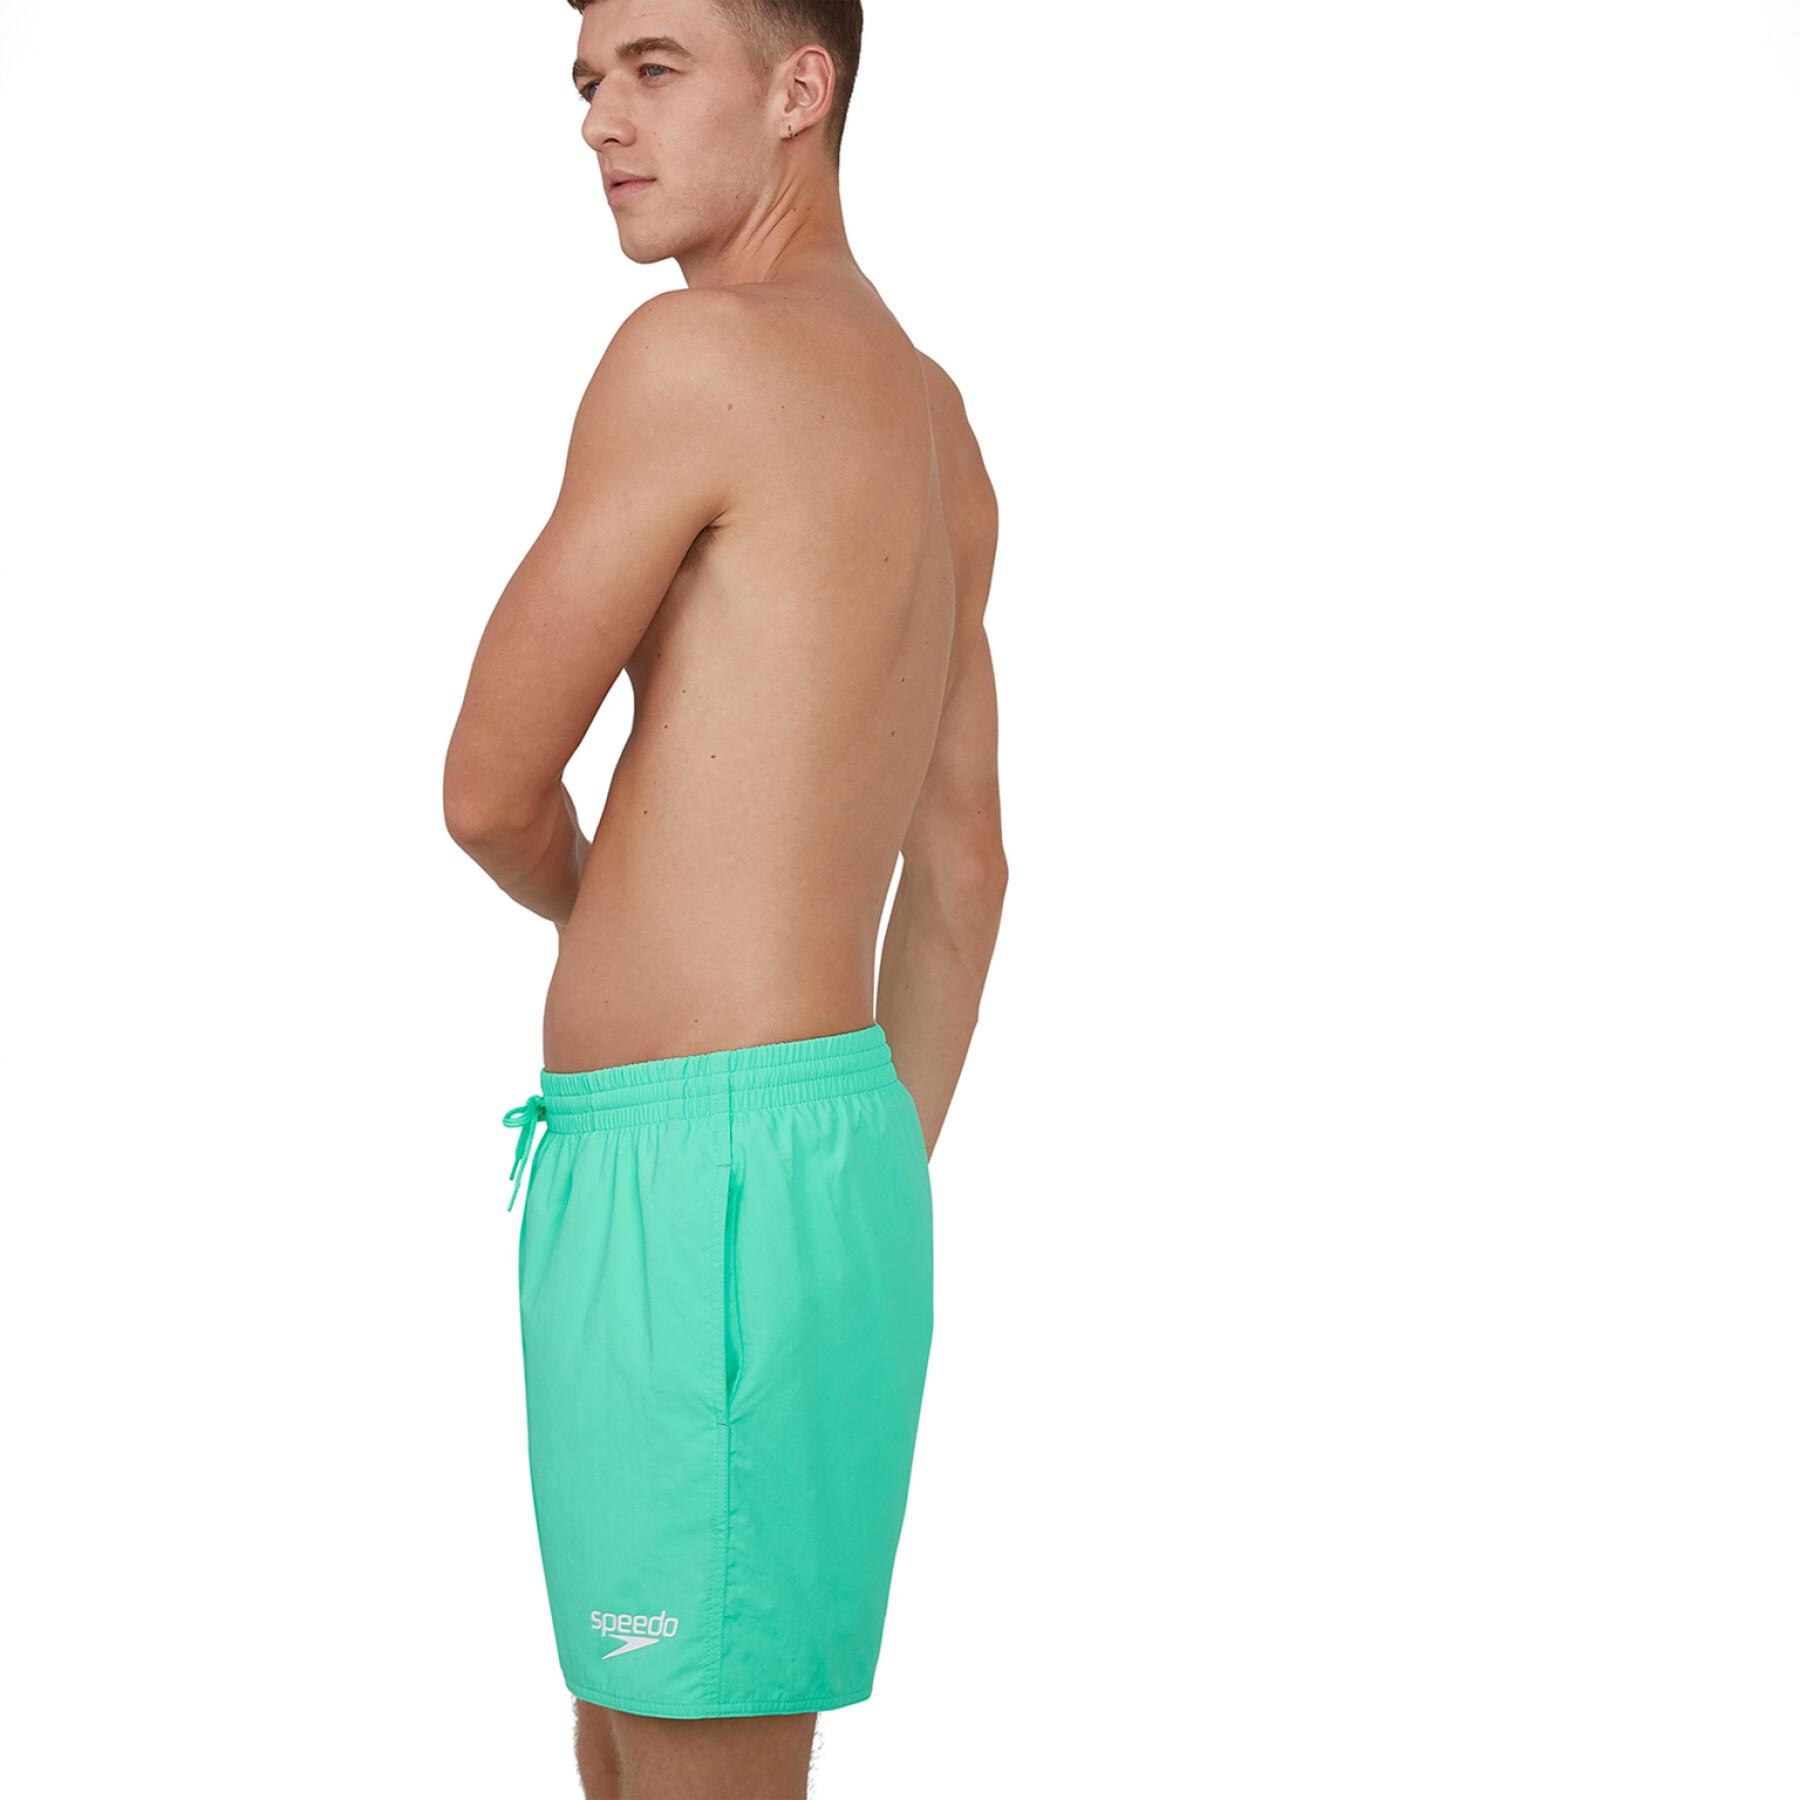 Swim shorts Speedo Essential 16